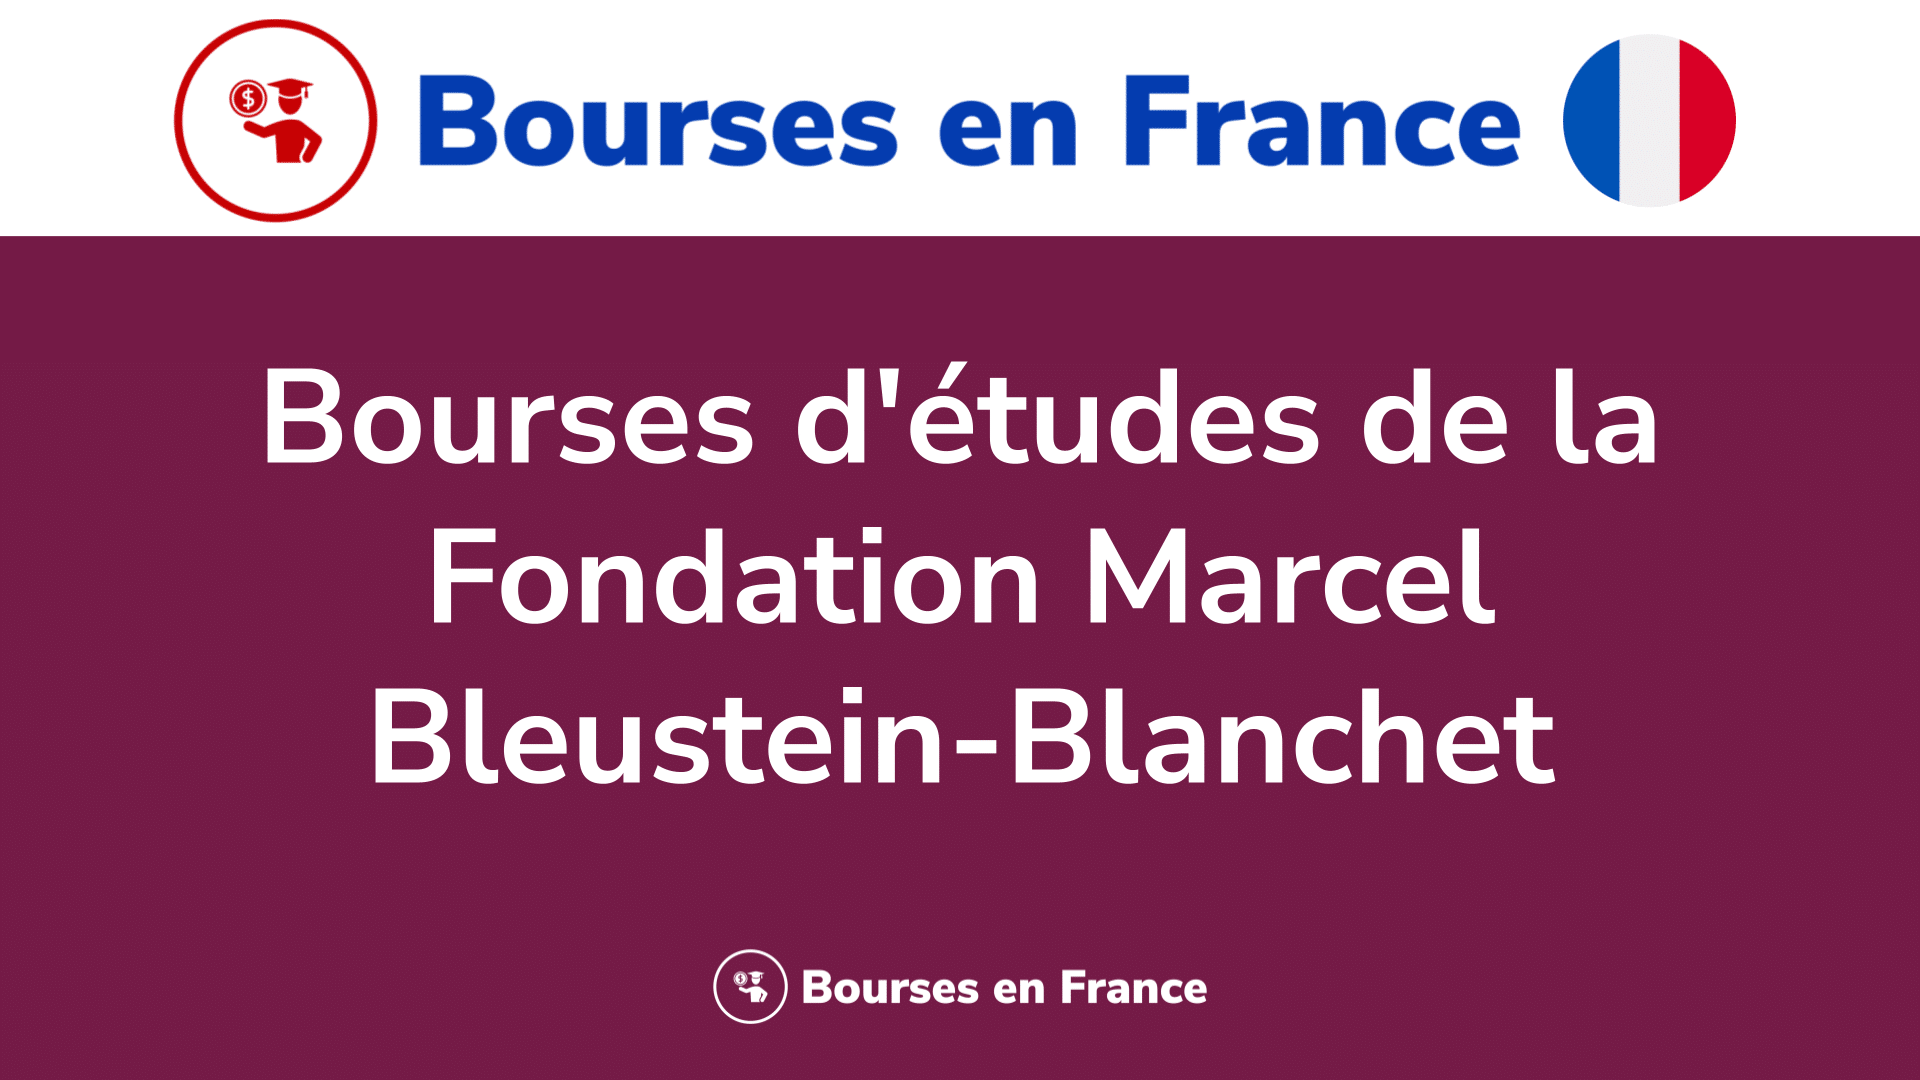 Bourses d'études de la Fondation Marcel Bleustein-Blanchet